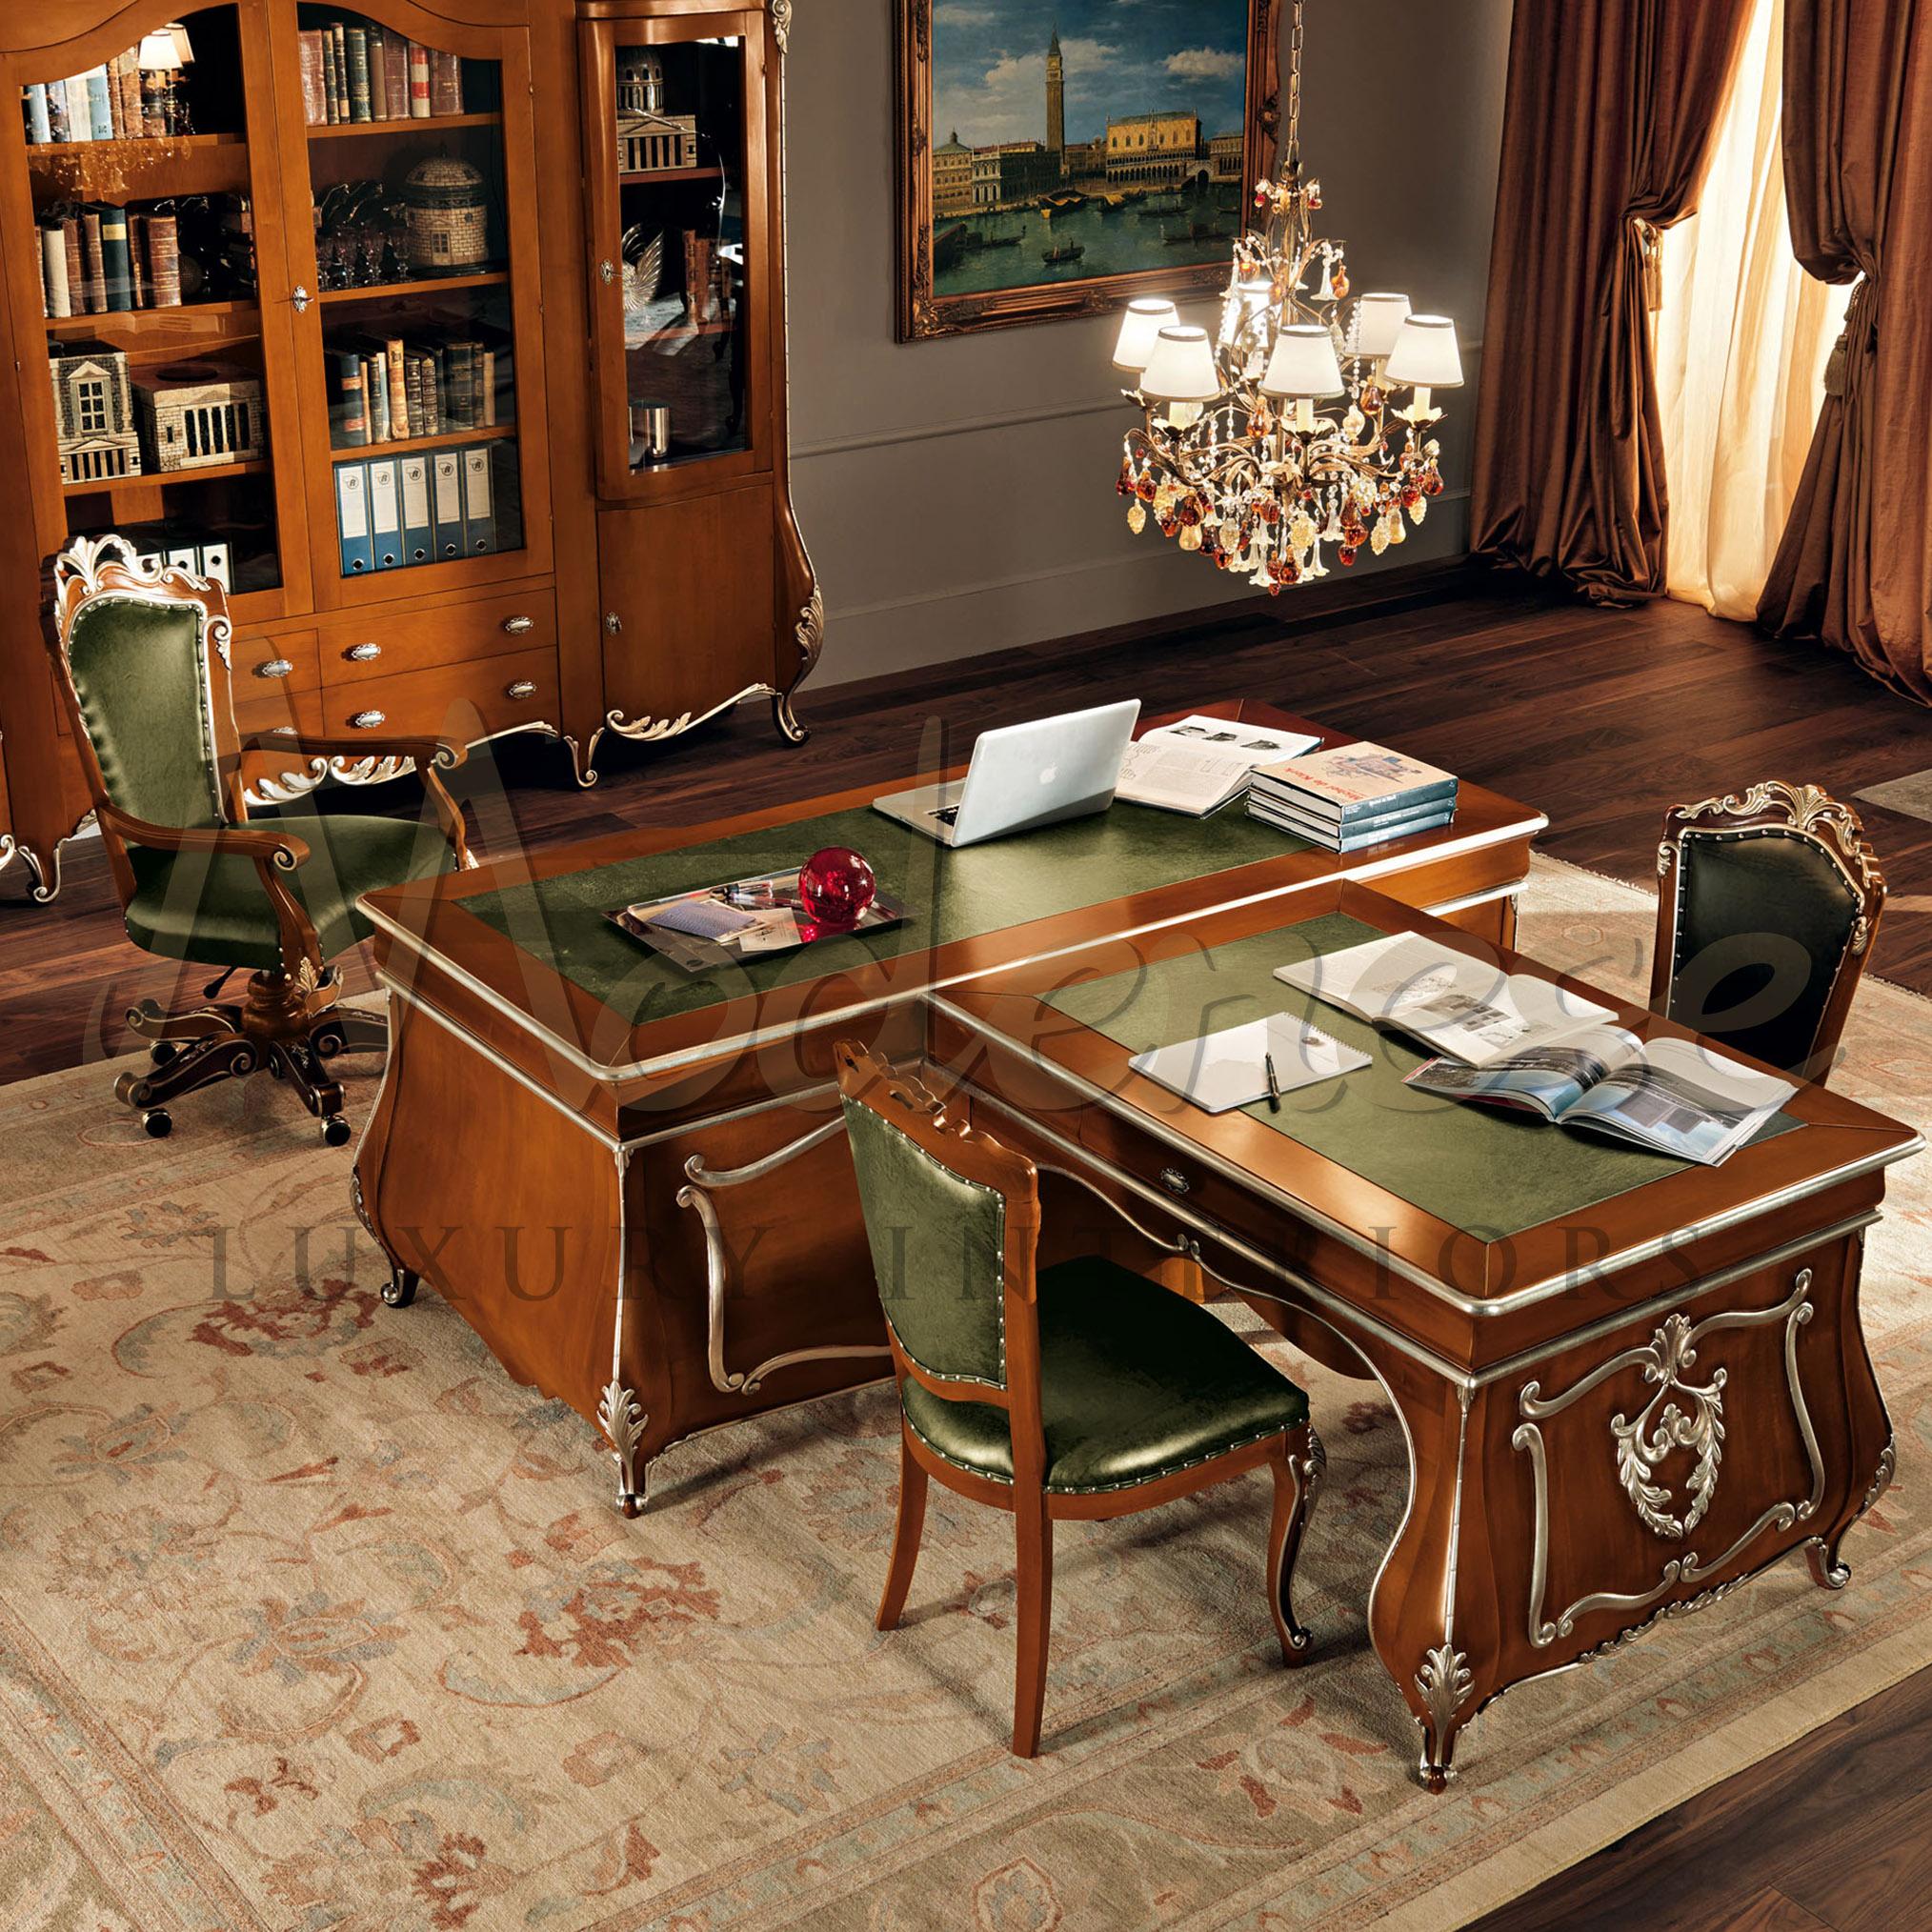 Vervollständigen Sie Ihr Büro mit diesem gewölbten Schreibtisch, der mit natürlichem Walnussholz und blattsilbernen Schnitzereien veredelt ist. Seine geschwungenen Barockbeine sind ein echter Hingucker, und das echte grüne italienische Leder auf der